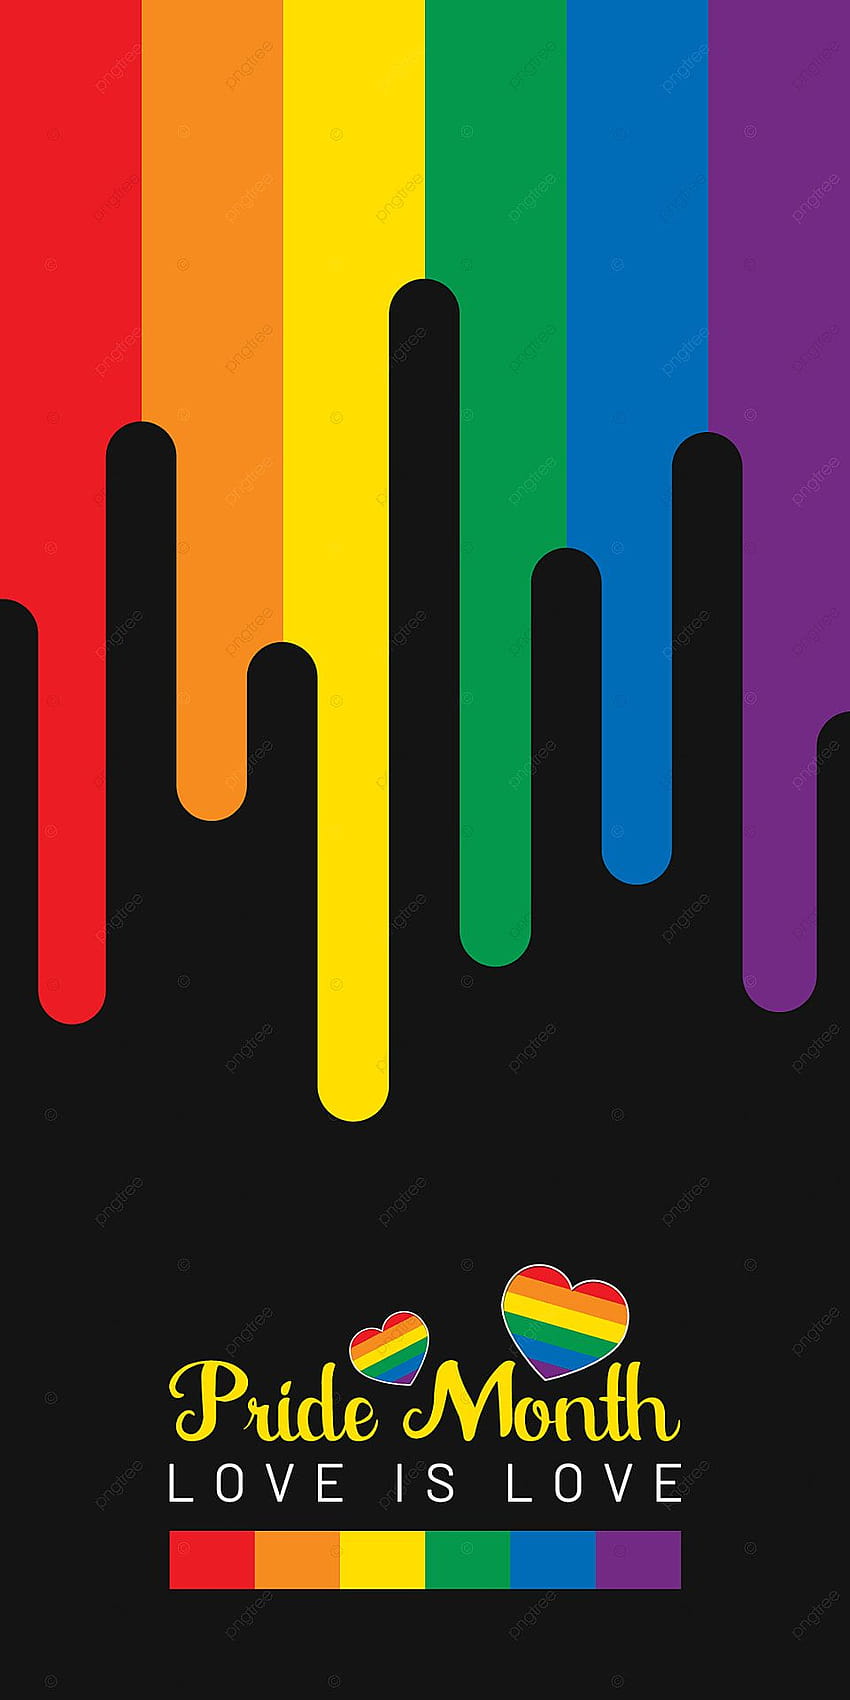 Mes del orgullo s coloridos y negros Teléfono móvil, Orgullo, Arco iris, s gay para, feliz mes del orgullo fondo de pantalla del teléfono